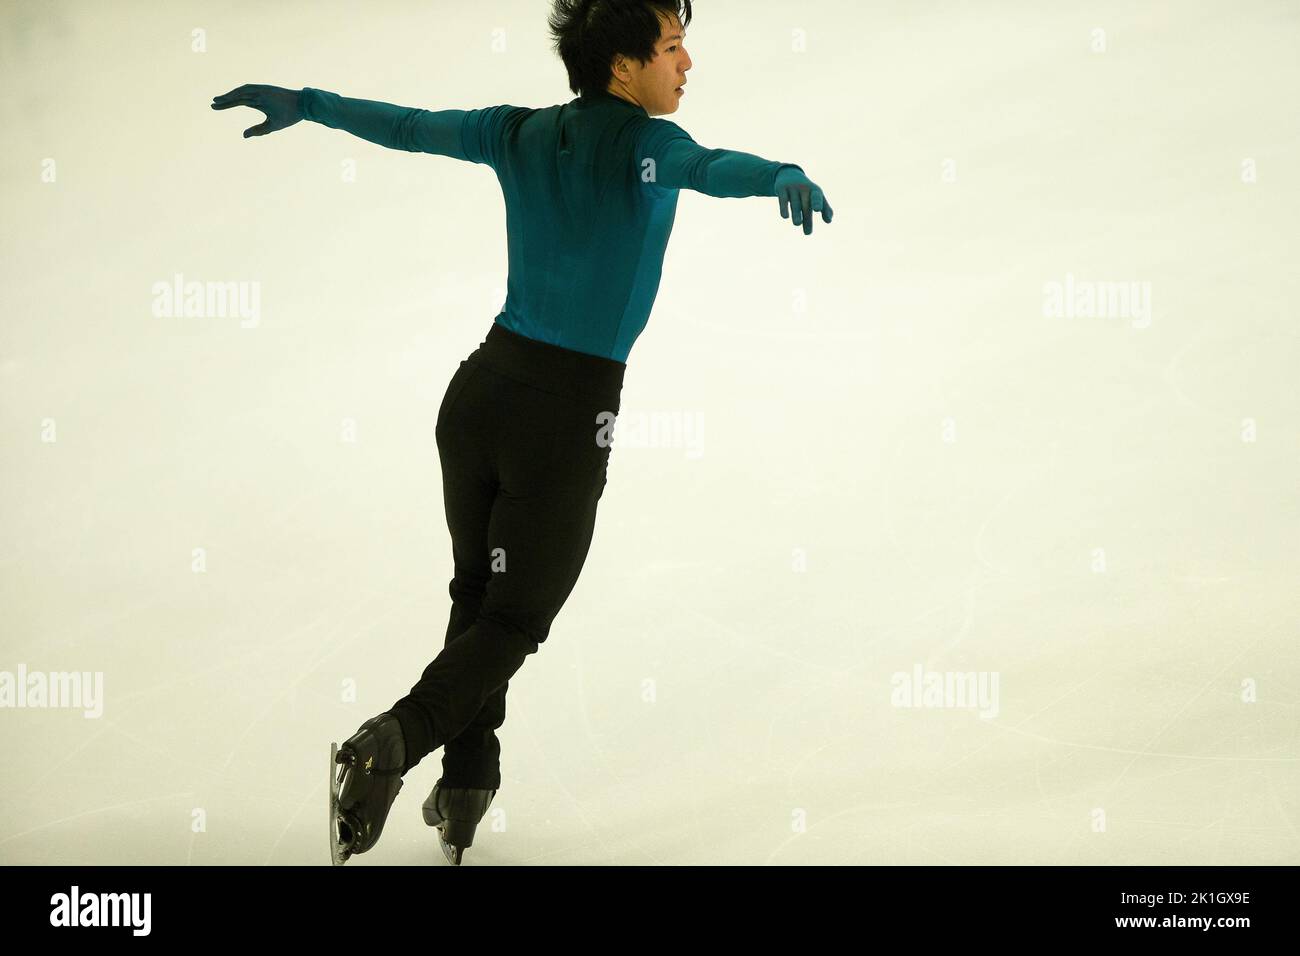 Adam SIAO HIM FA (FRA), patinage gratuit des hommes pendant le patinage artistique de la série Challenger 2022 de l'UIP, sports de glace à Bergame, Italie, 18 septembre 2022 Banque D'Images